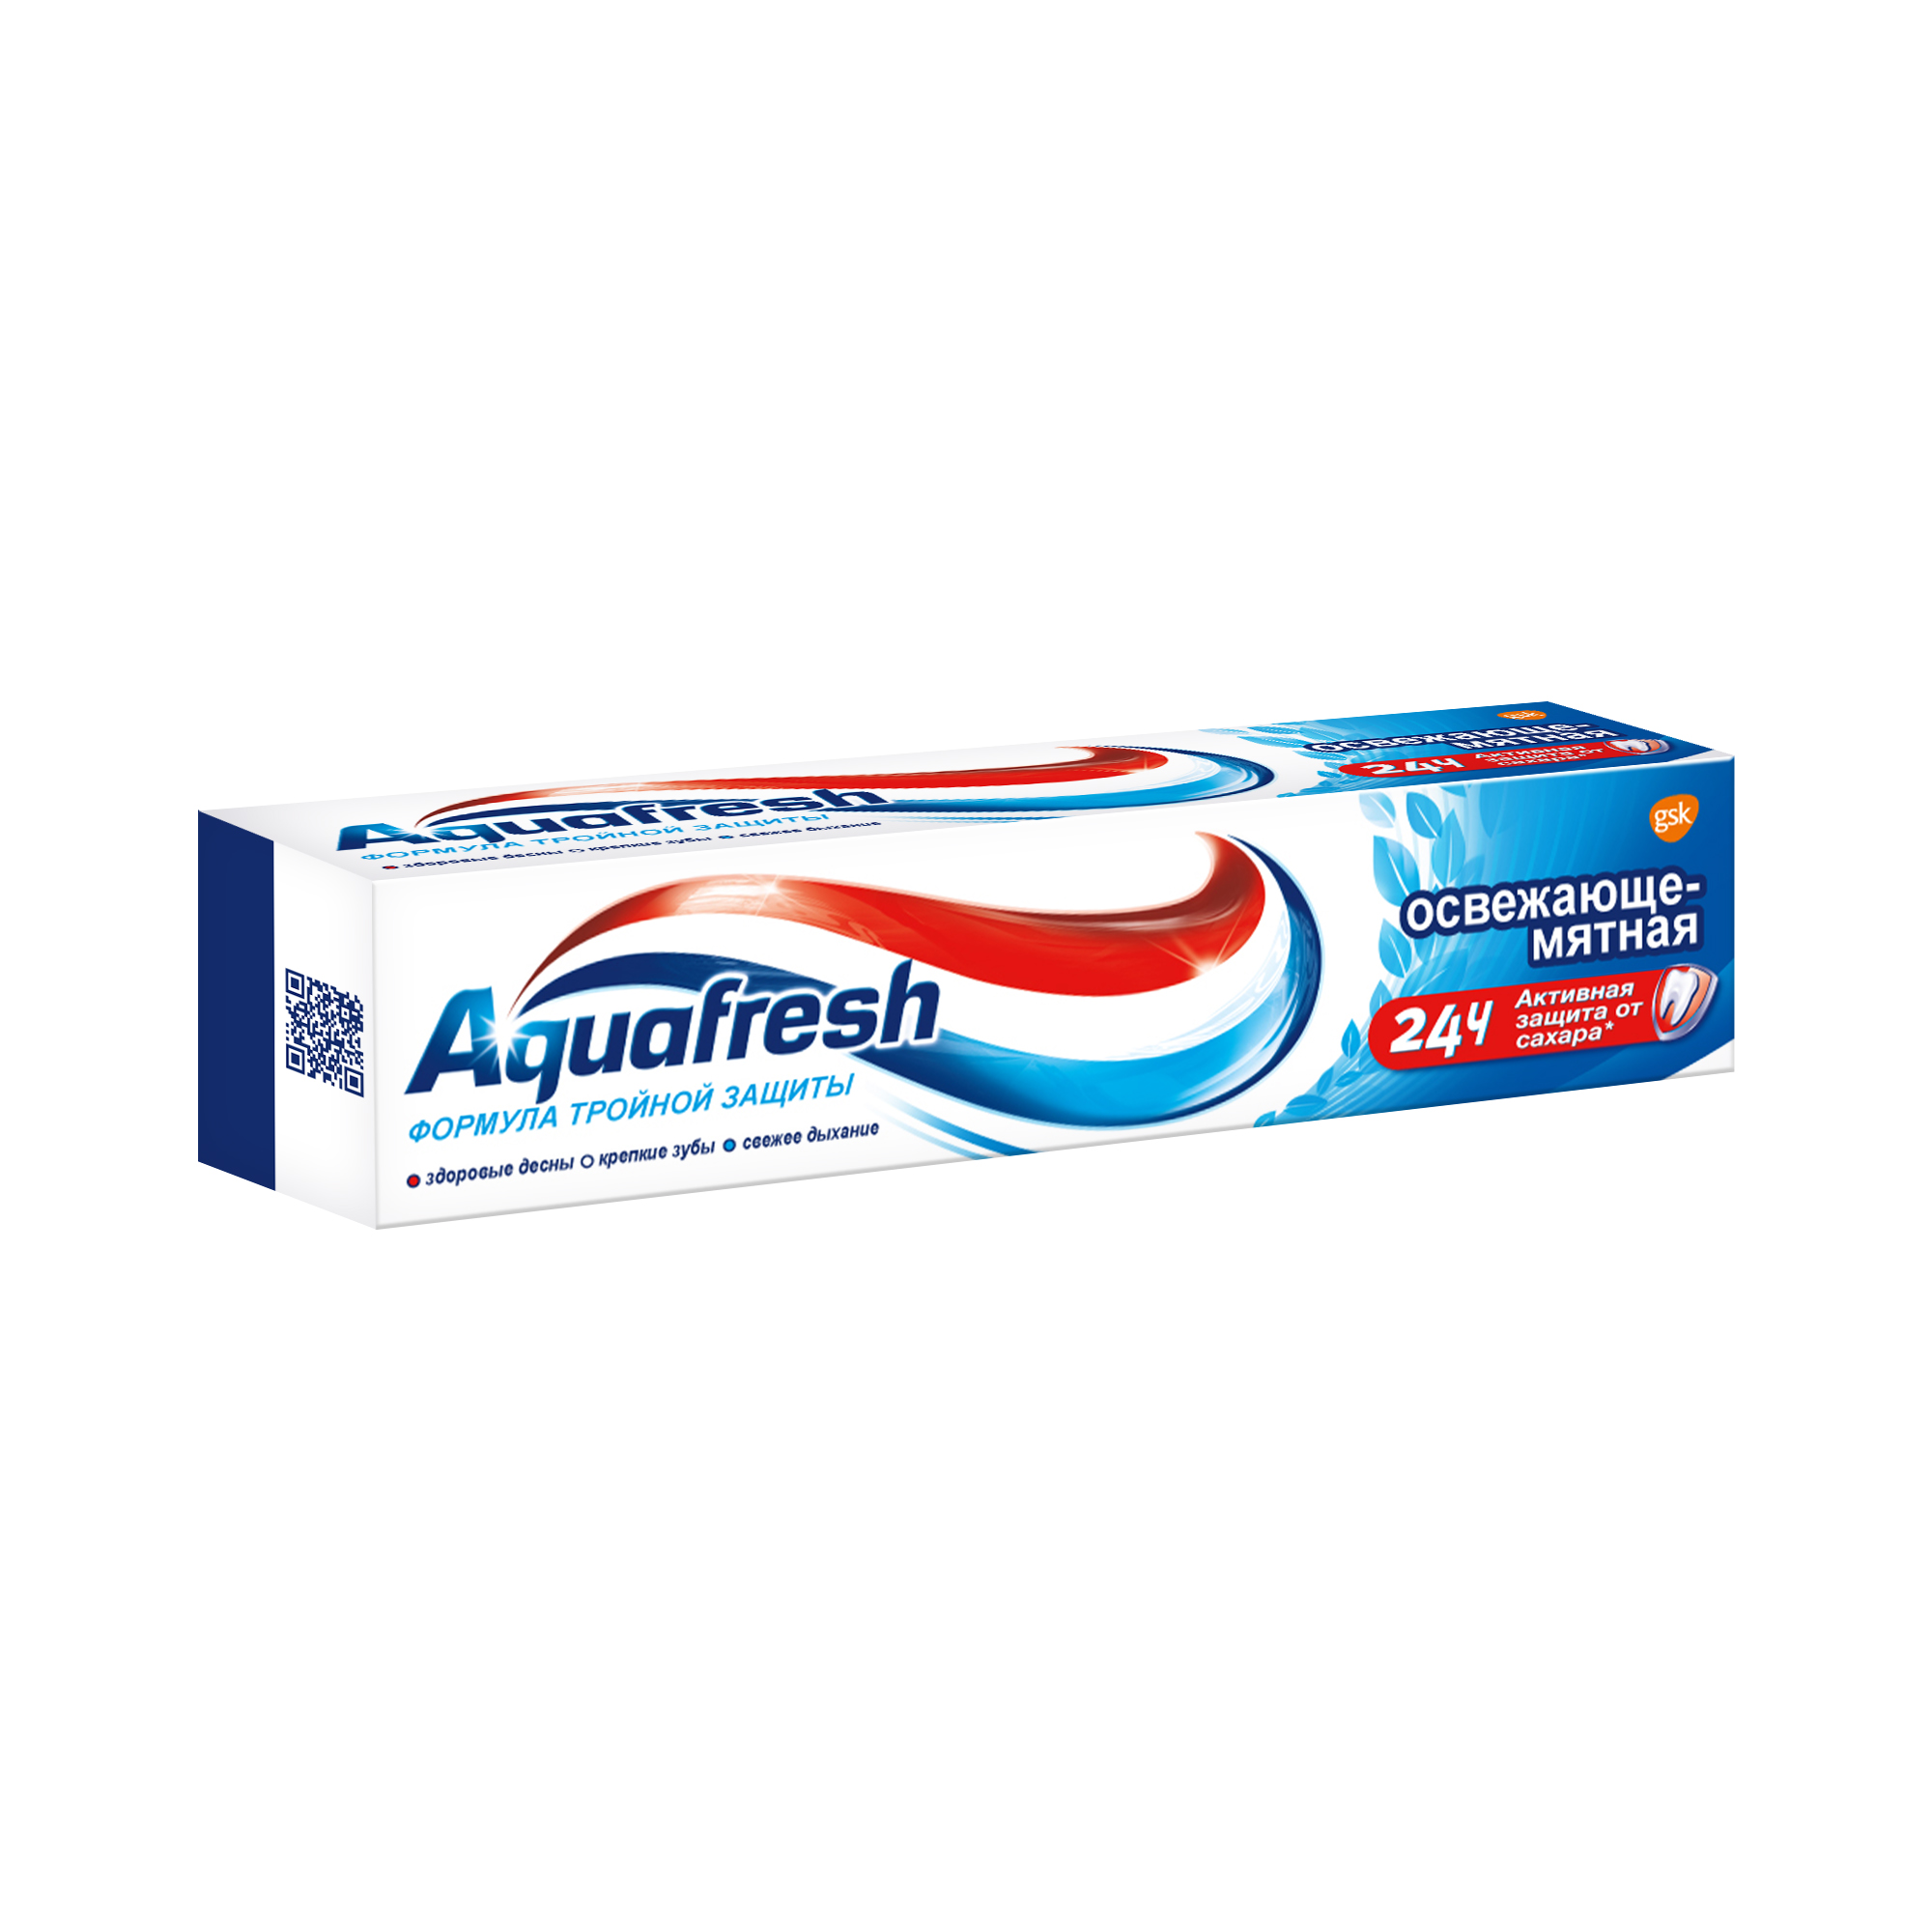 Зубная паста Aquafresh Освежающе-мятная 50 мл - фото 5